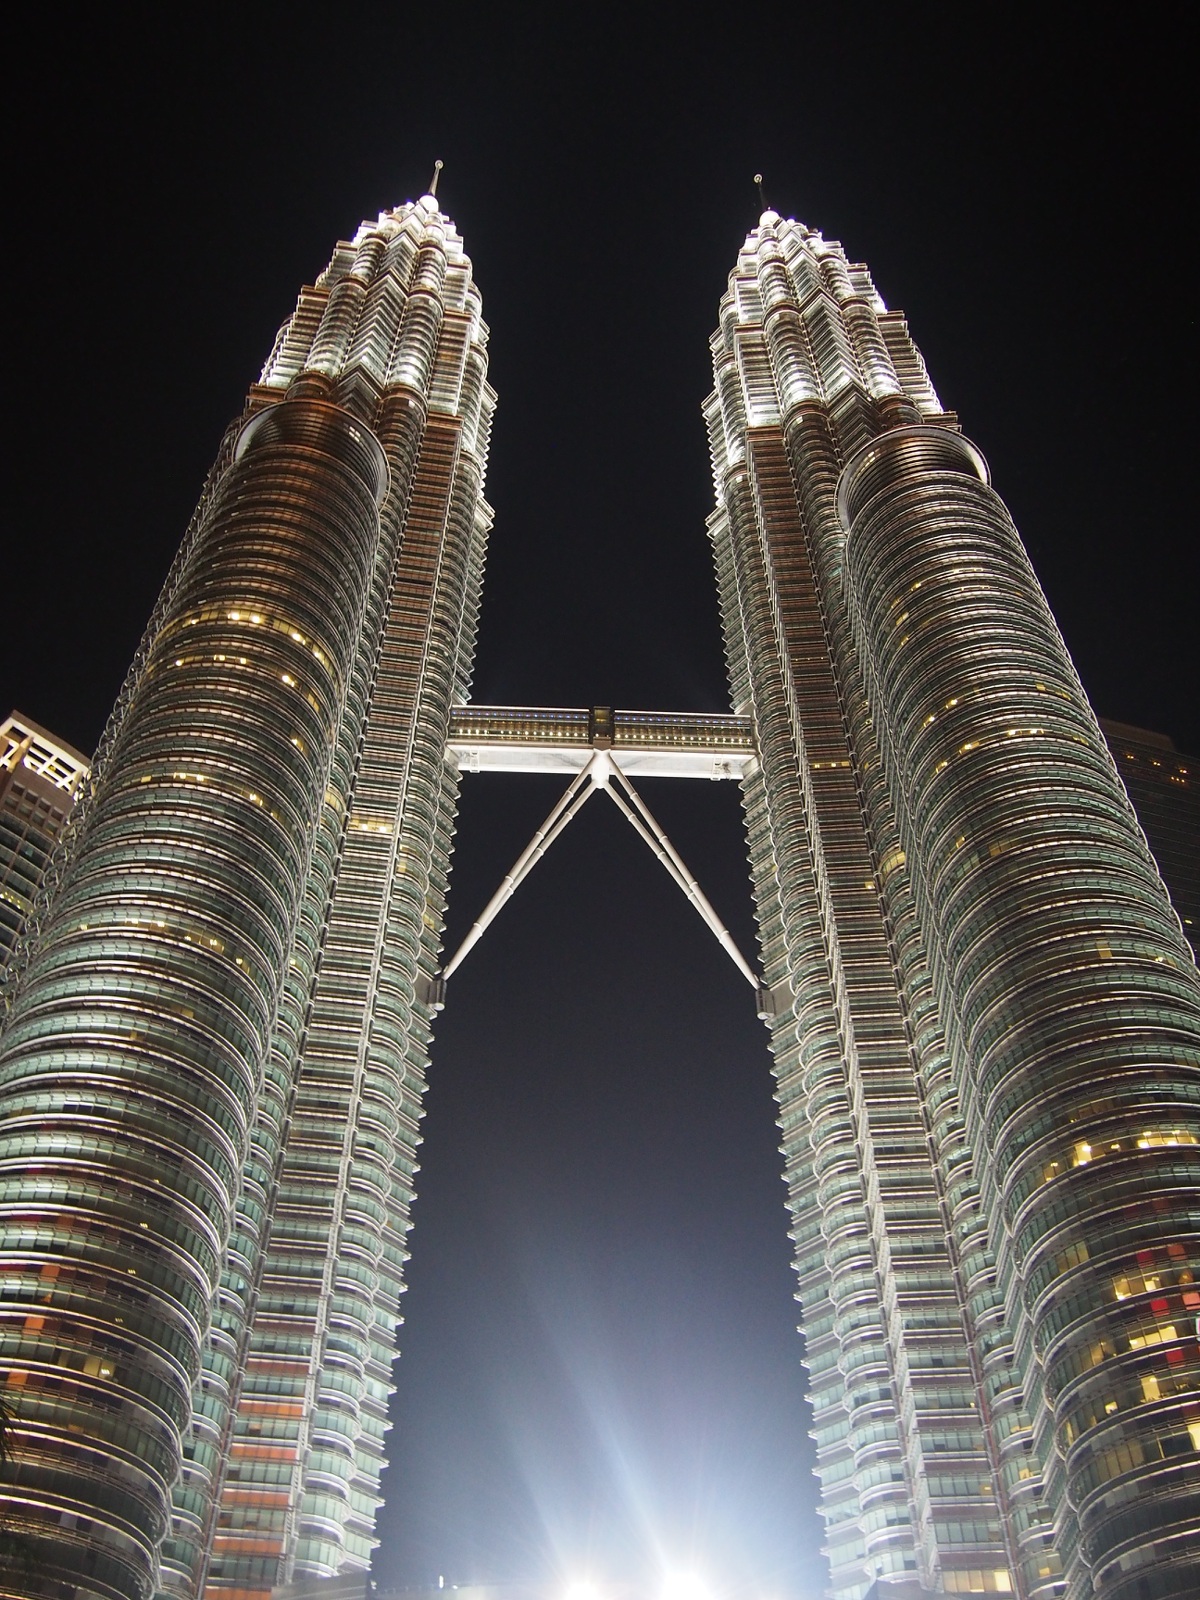 Petronas Towers at night (Glow sticks)